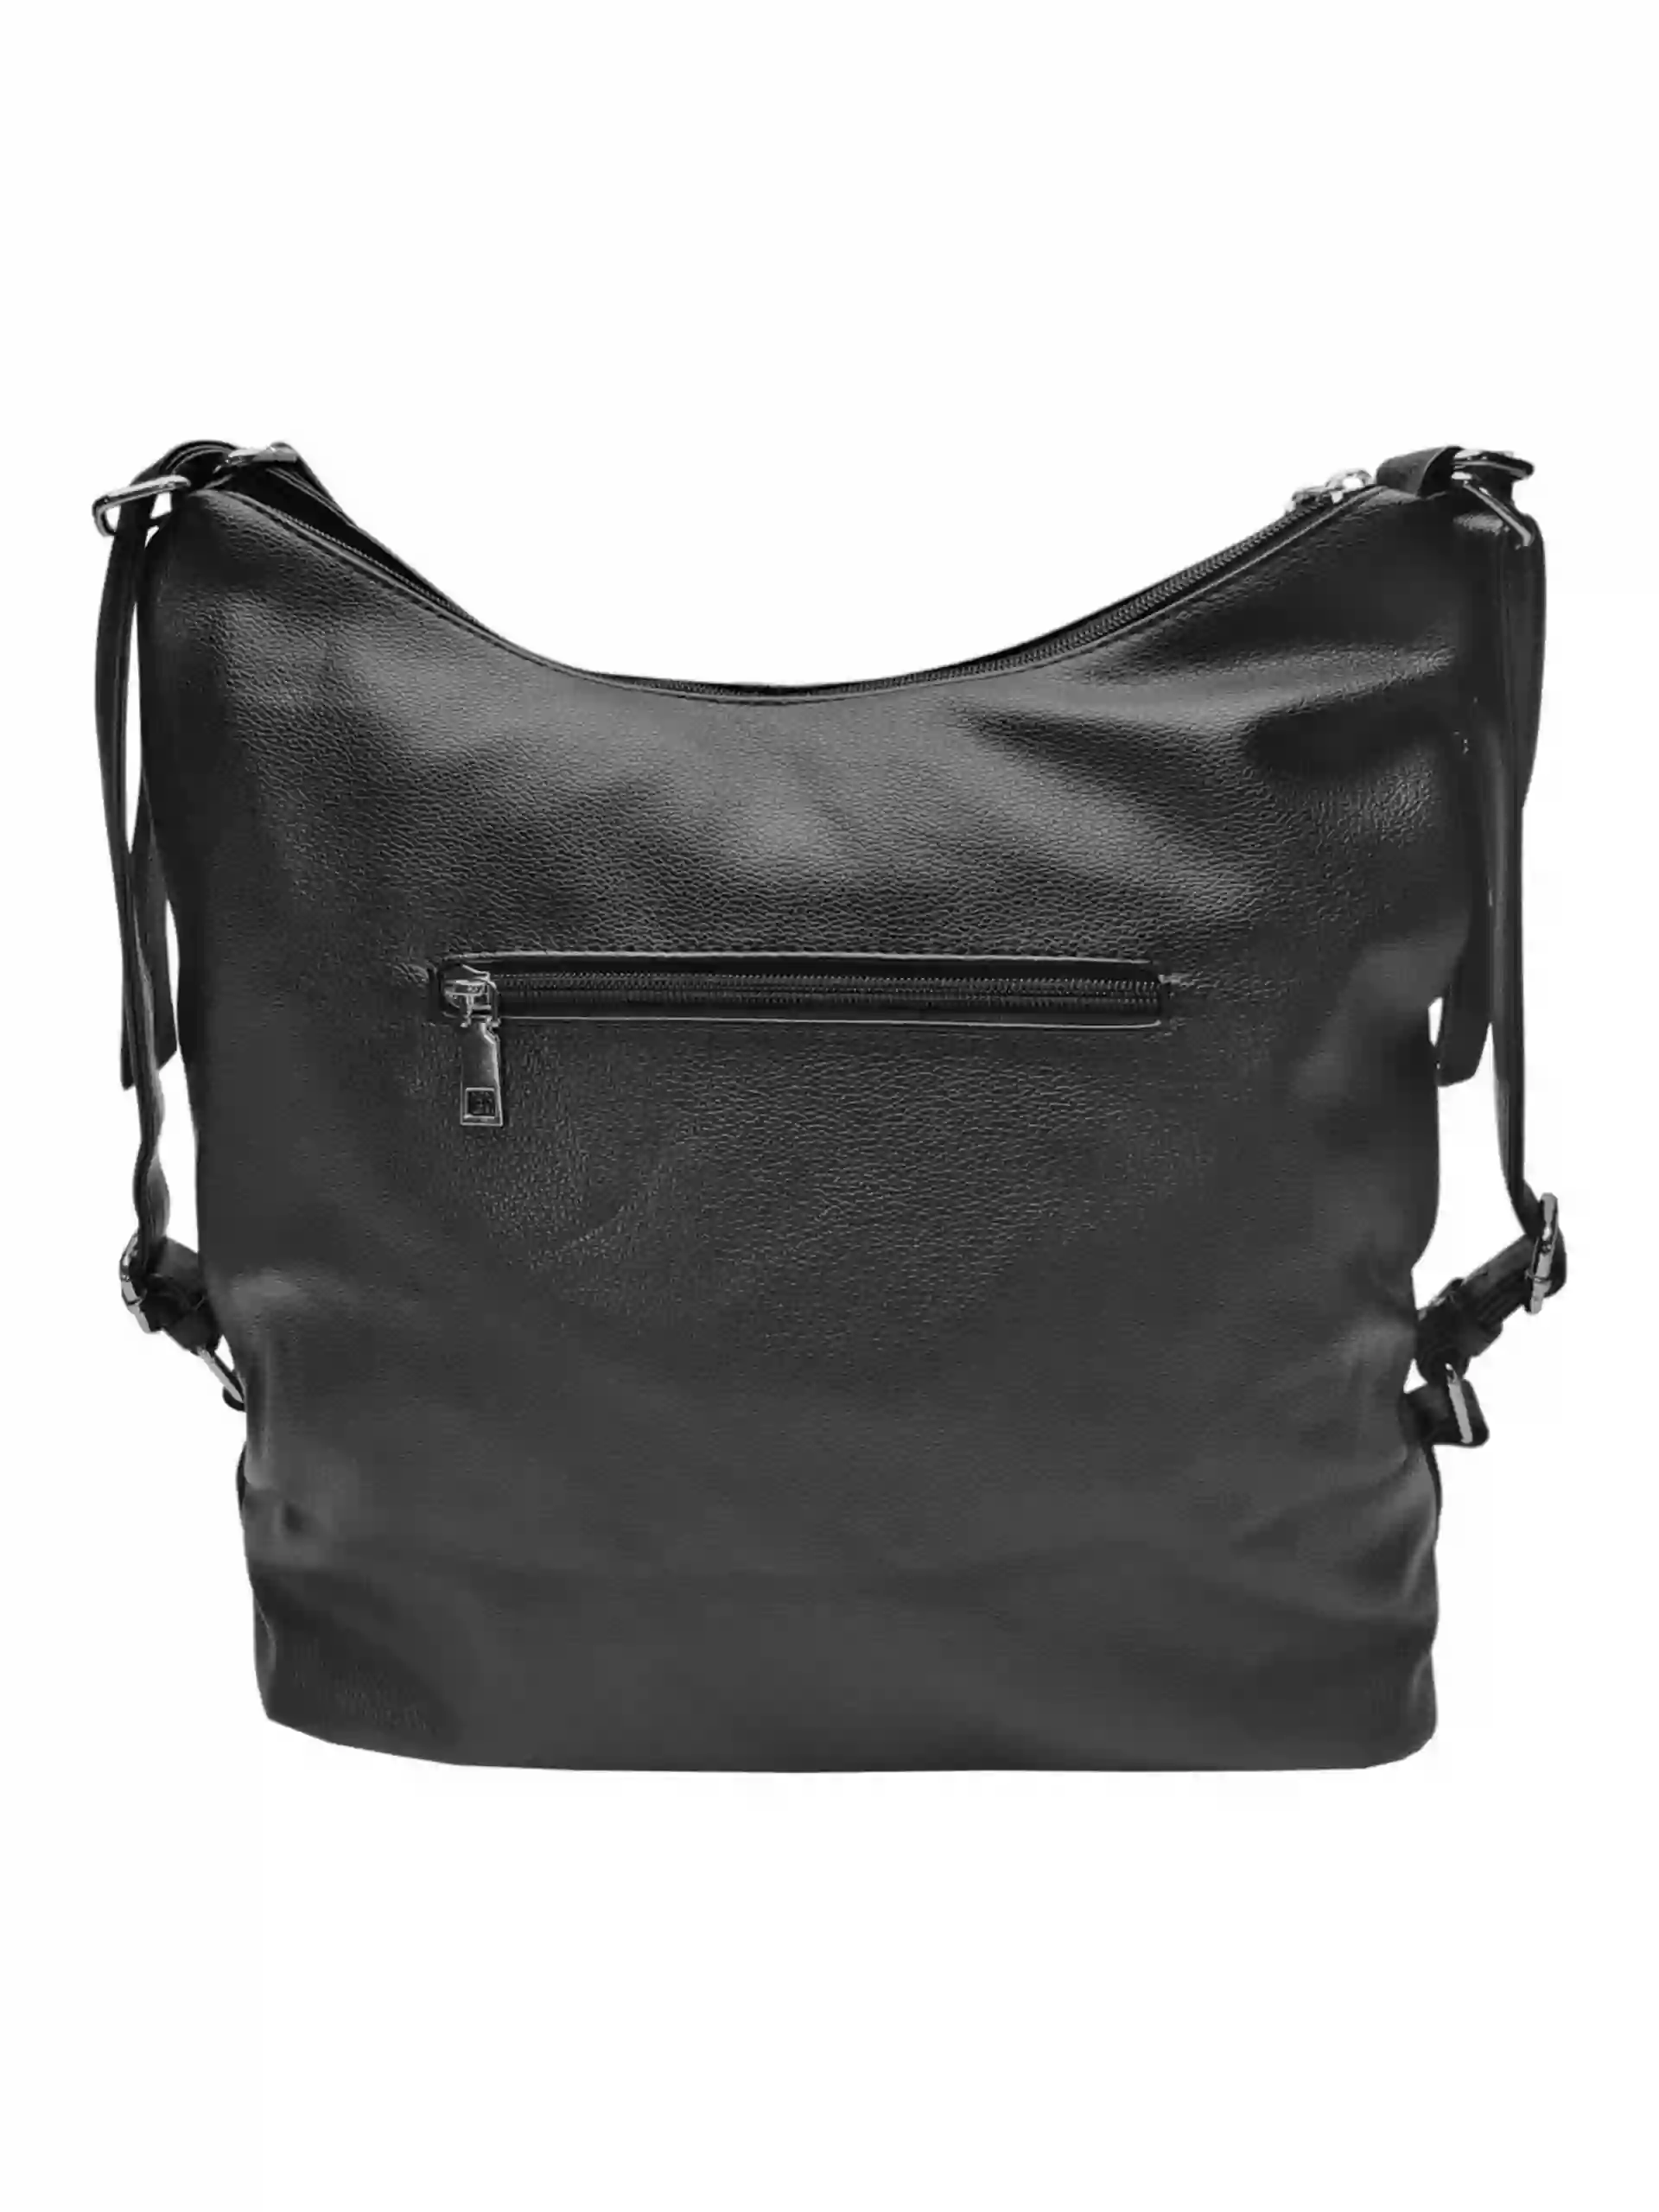 Velký černý kabelko-batoh s bočními kapsami, Tapple, 9314-3, zadní strana kabelko-batohu